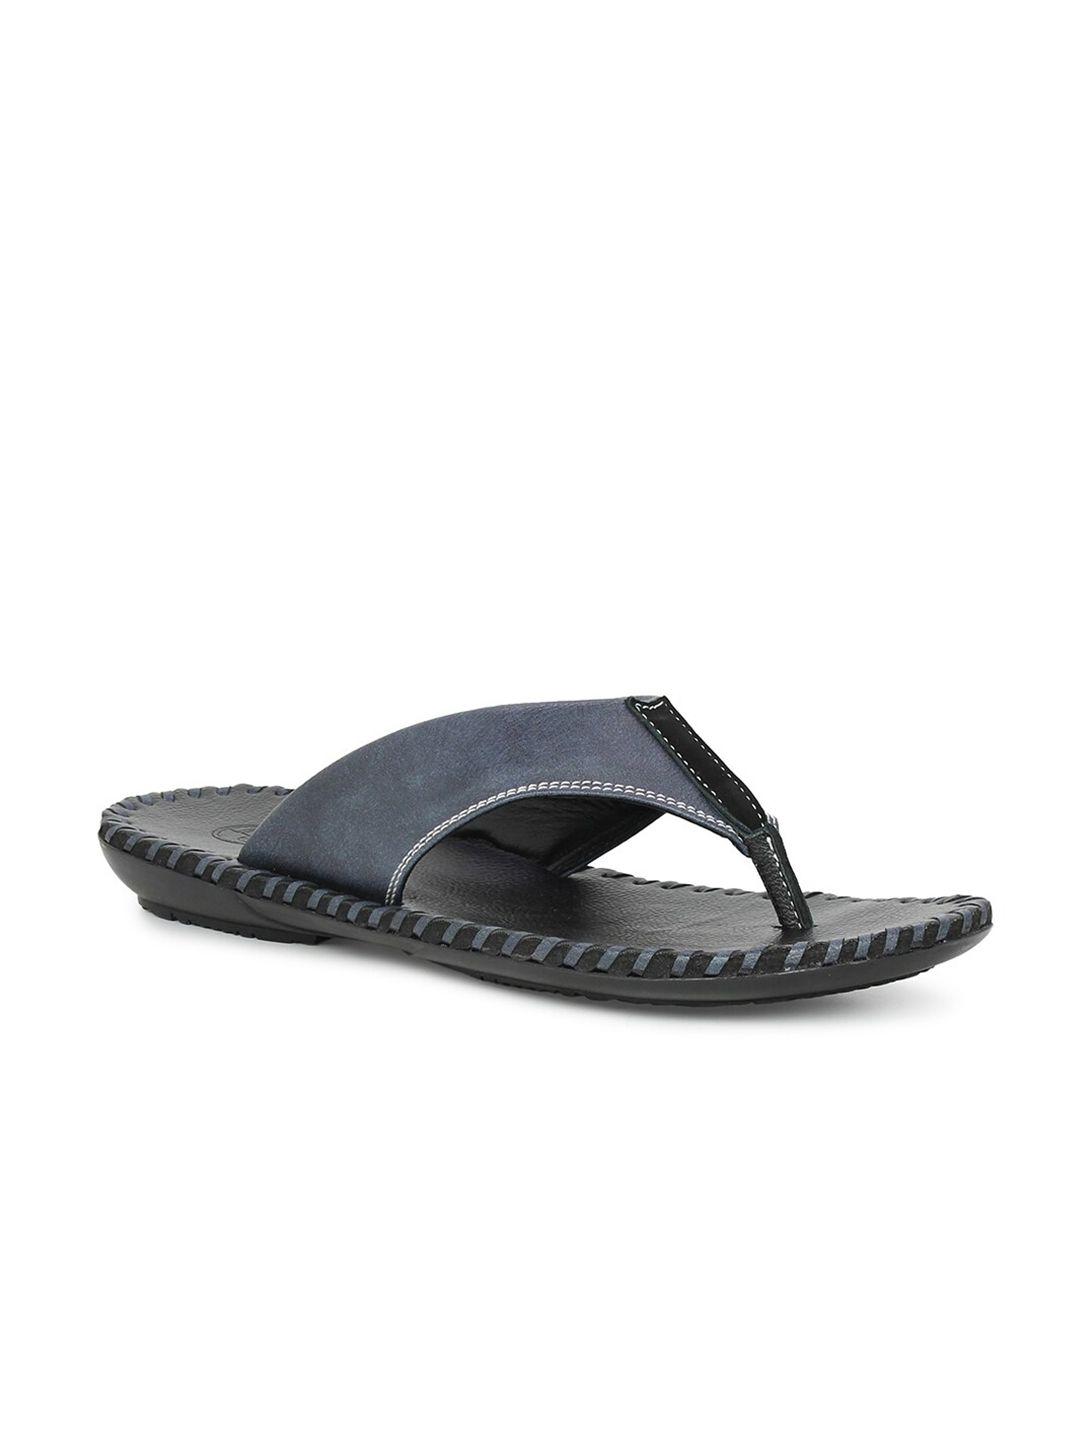 privo-men-blue-&-black-leather-comfort-sandals